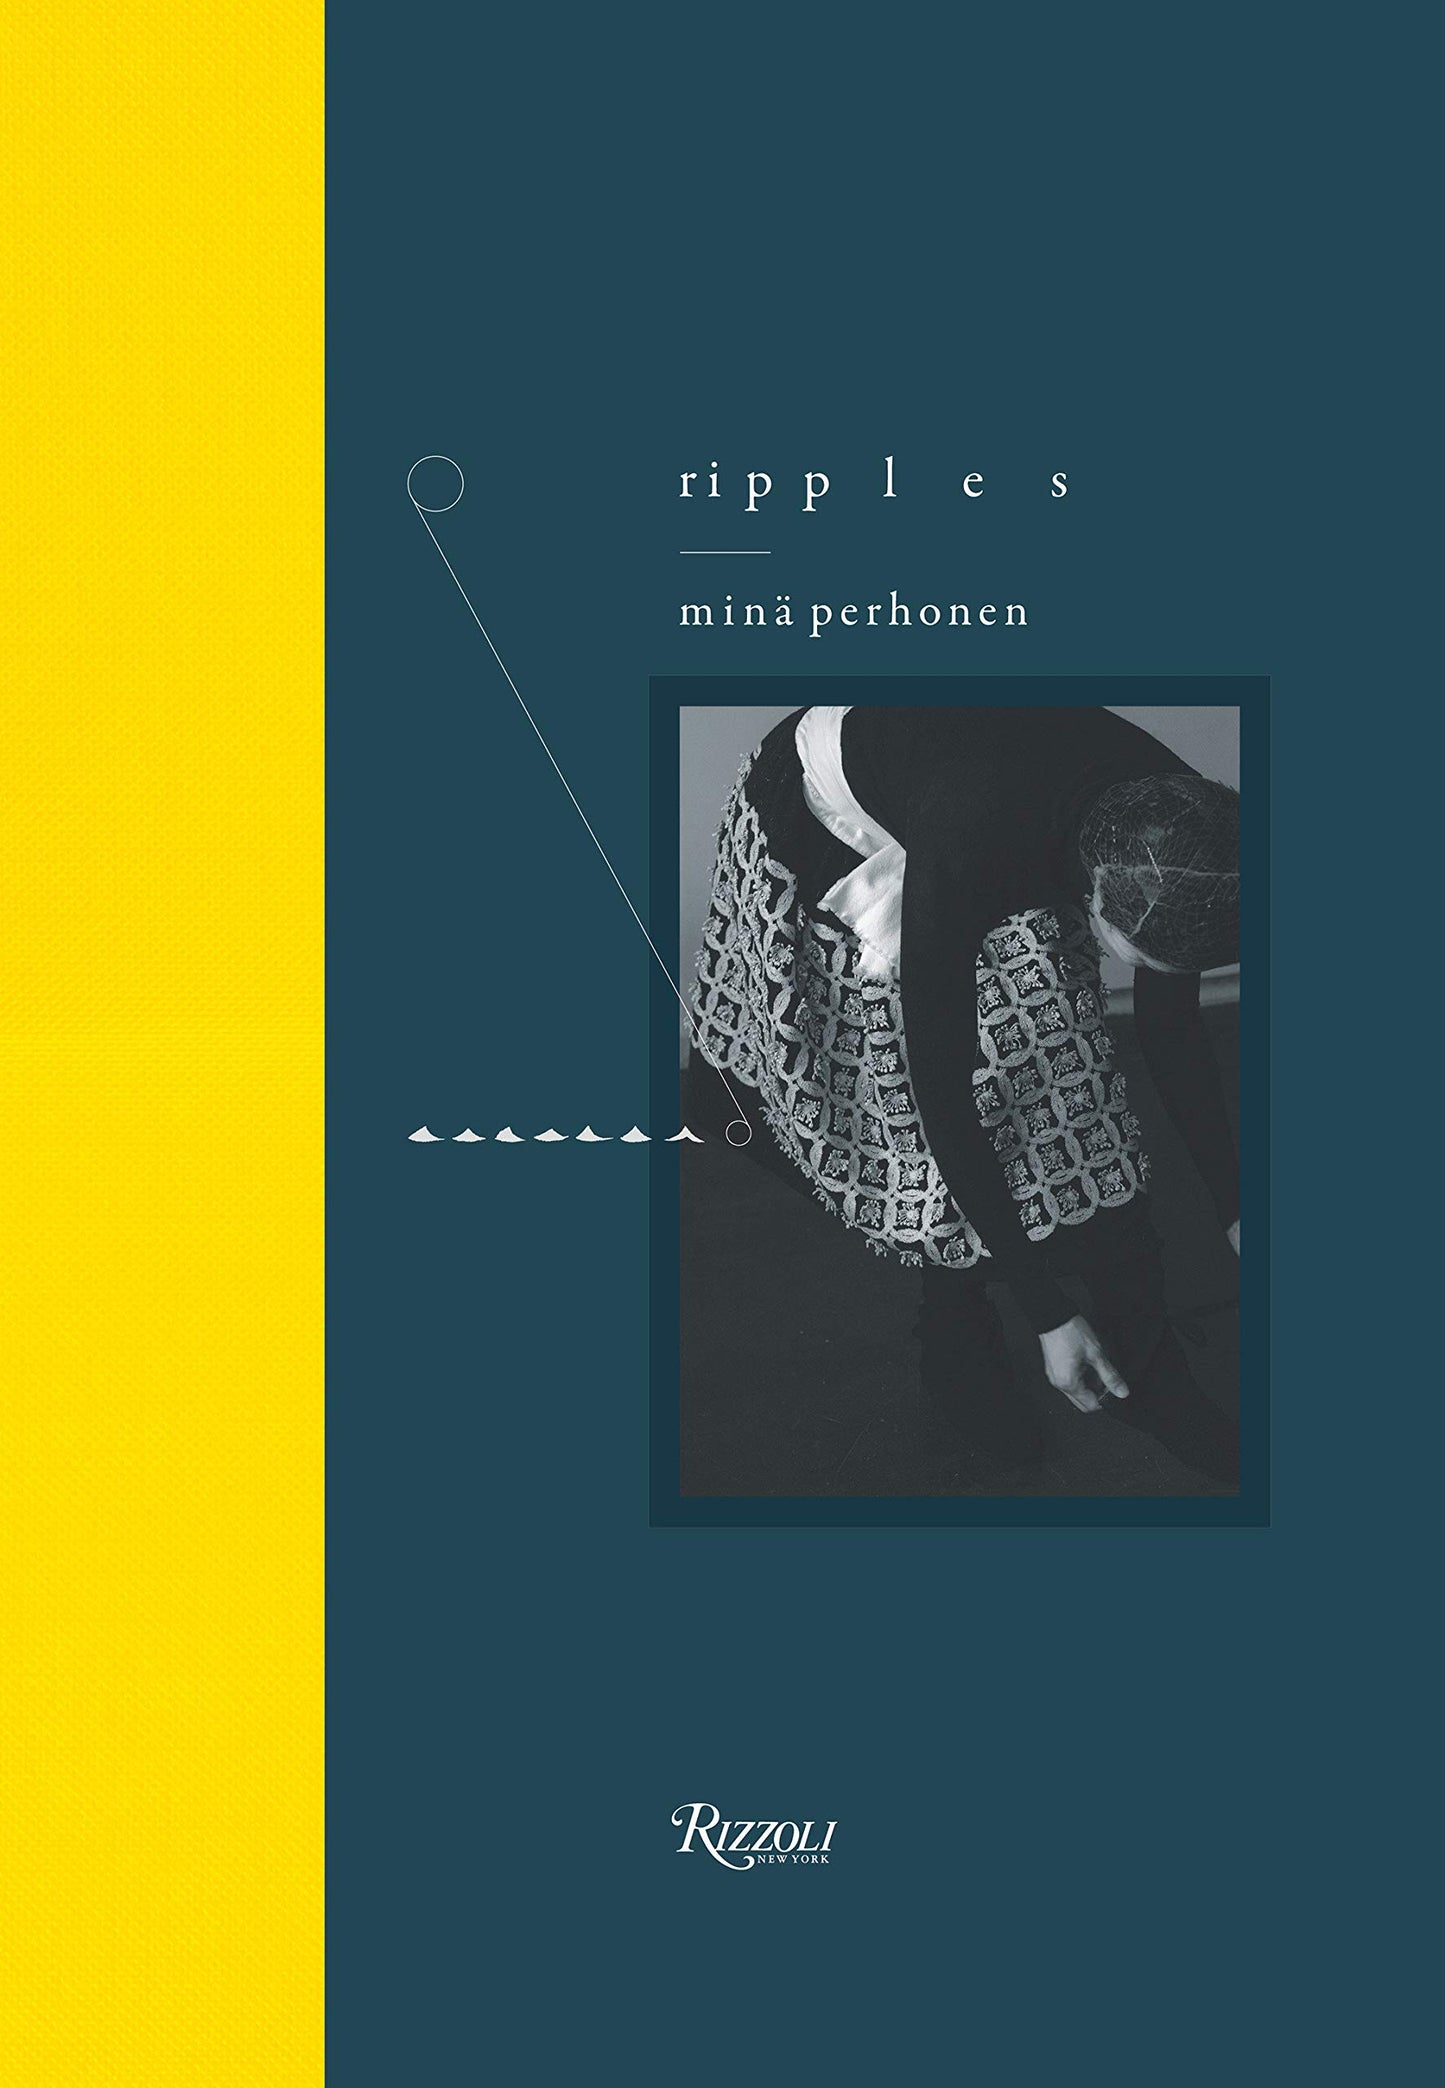 "Ripples" by Mina Perhonen (Akira Minagawa) 皆川明